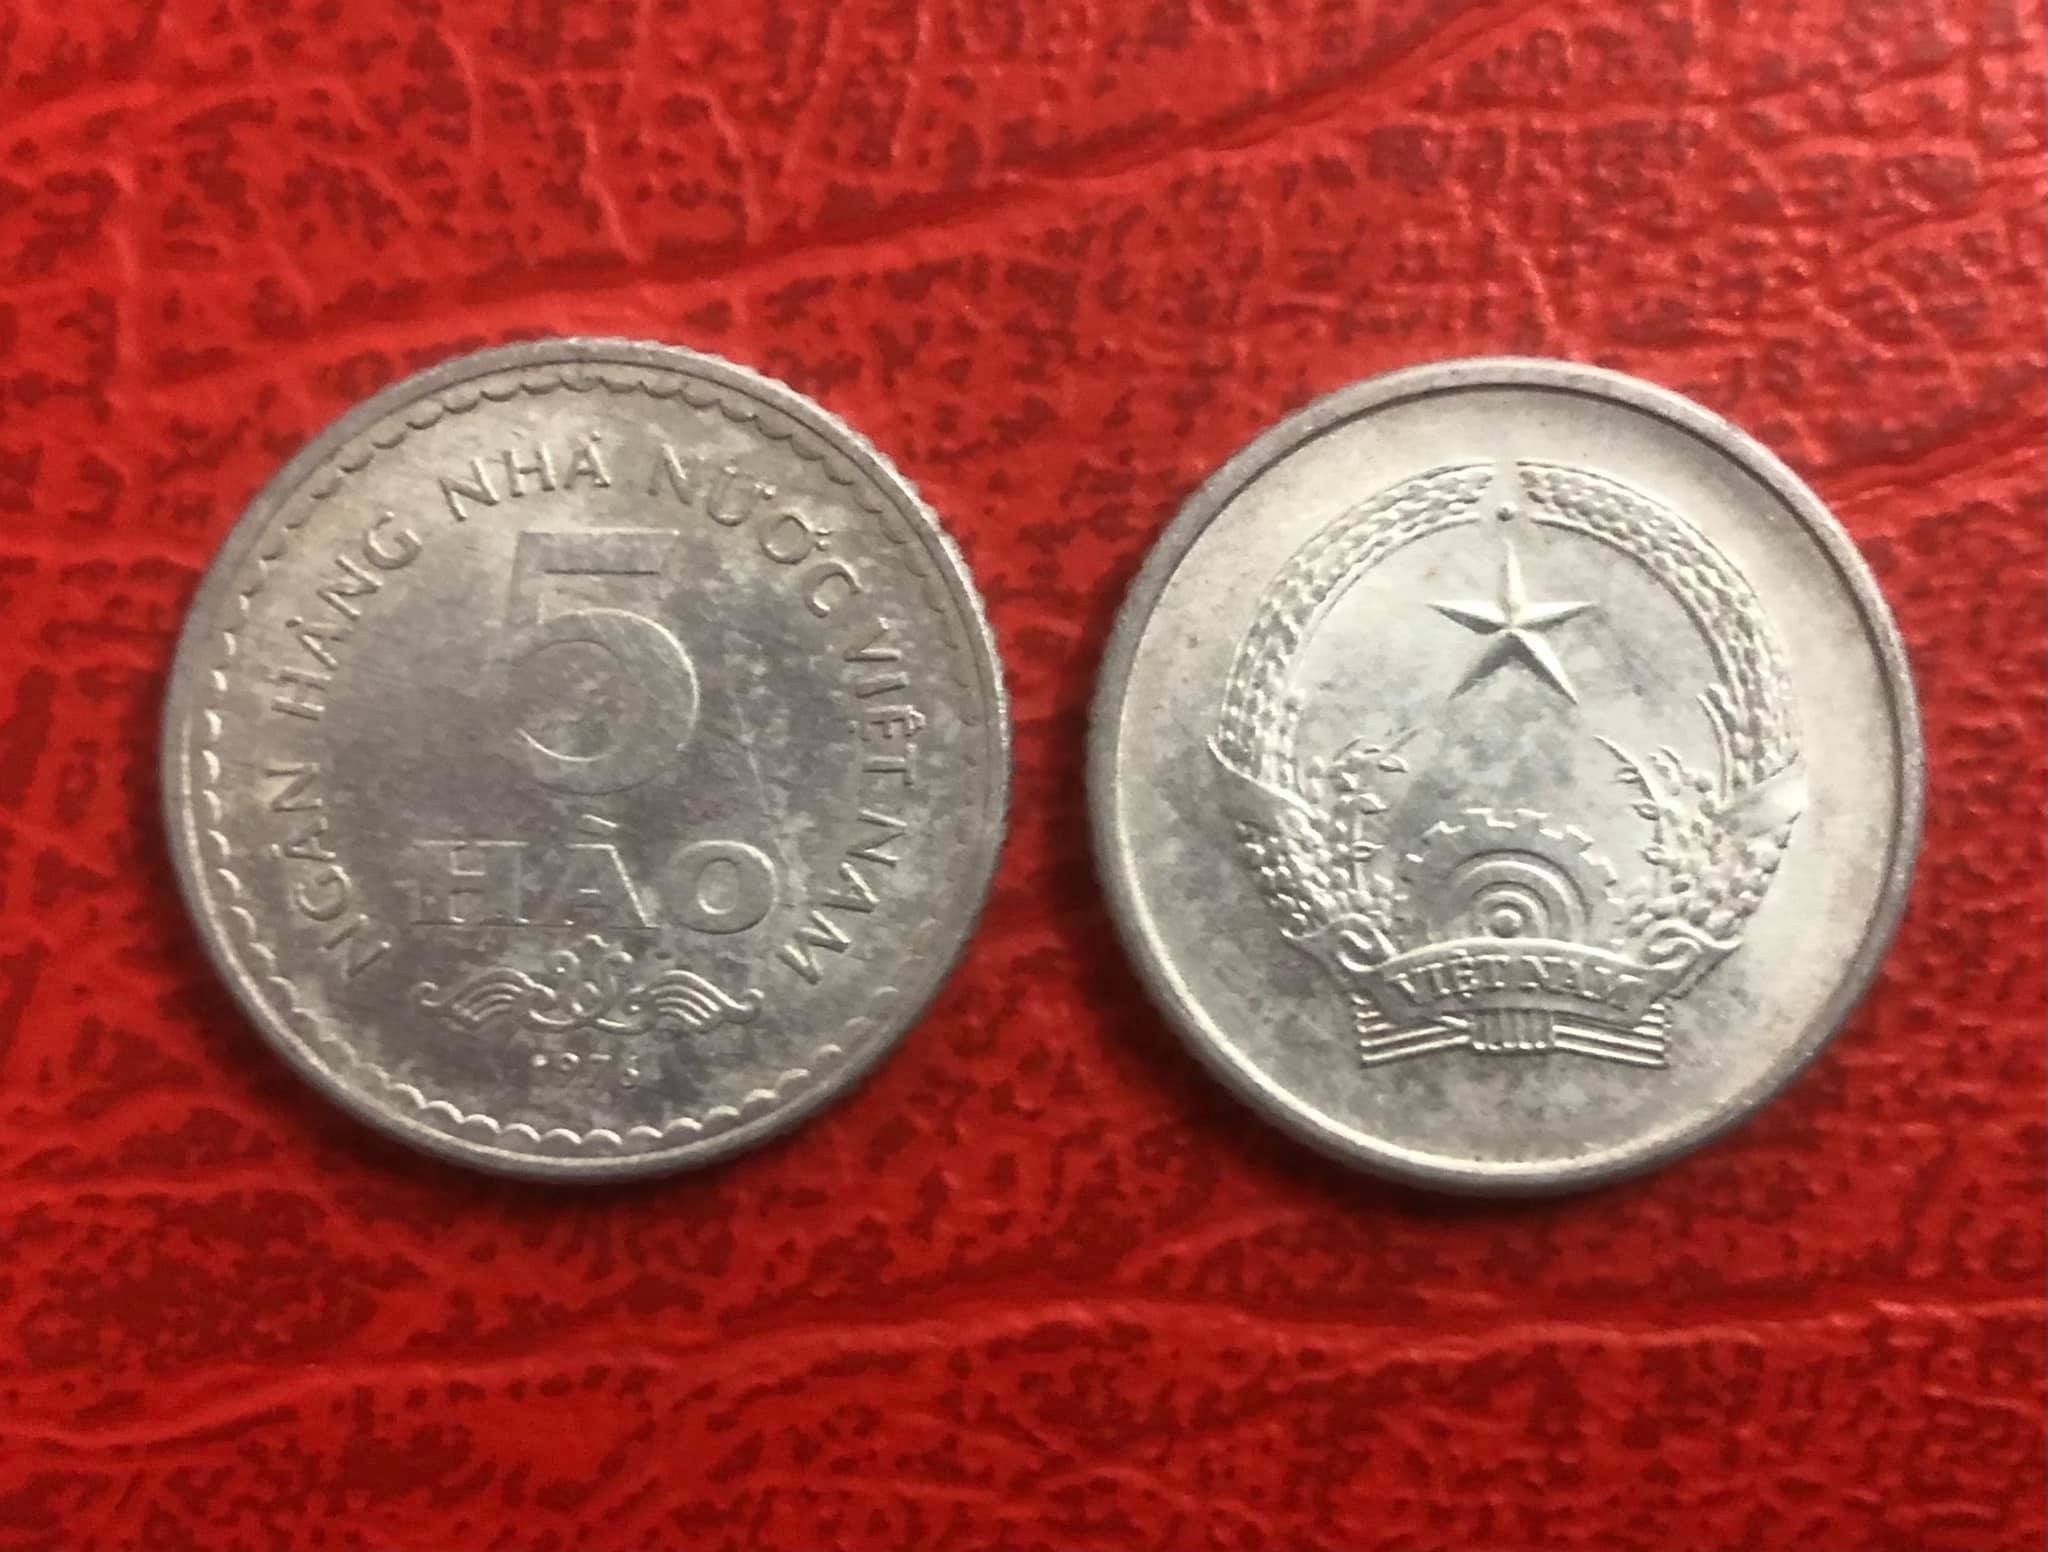 Đồng xu 5 hào 1976, đồng xu trong bộ đầu tiên sau giải phóng